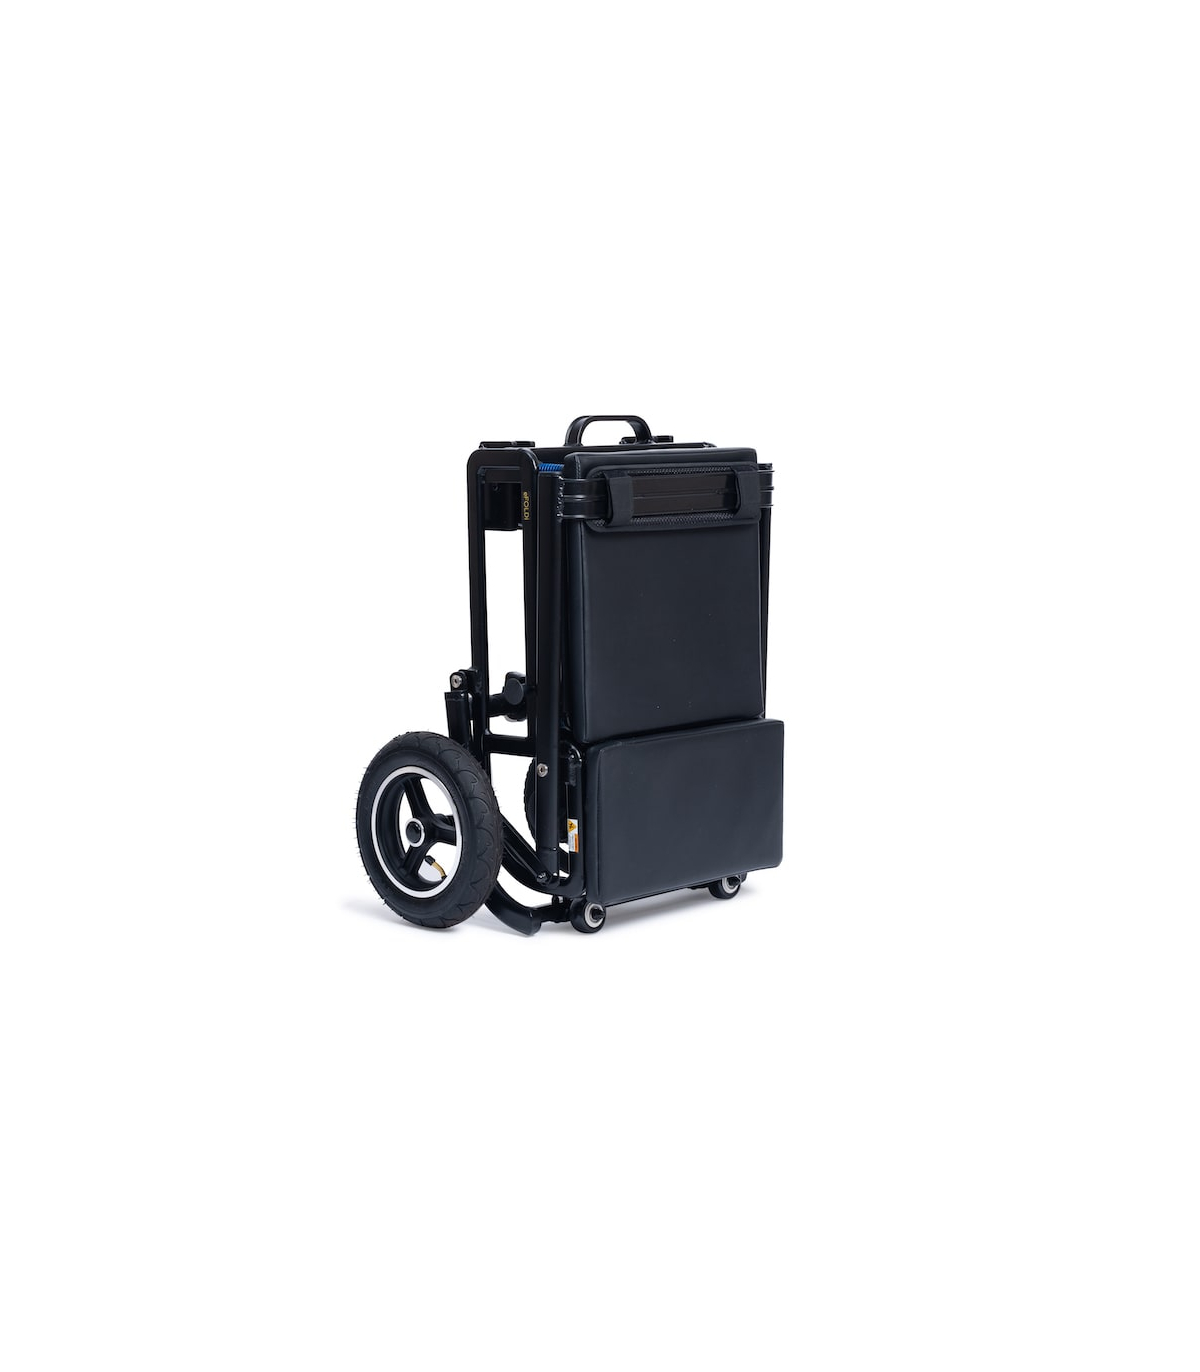 Scooter de mobilité de voyage compact pour personnes âgées, scooter  électrique à 4 roues avec siège large pliable, couleur noire 